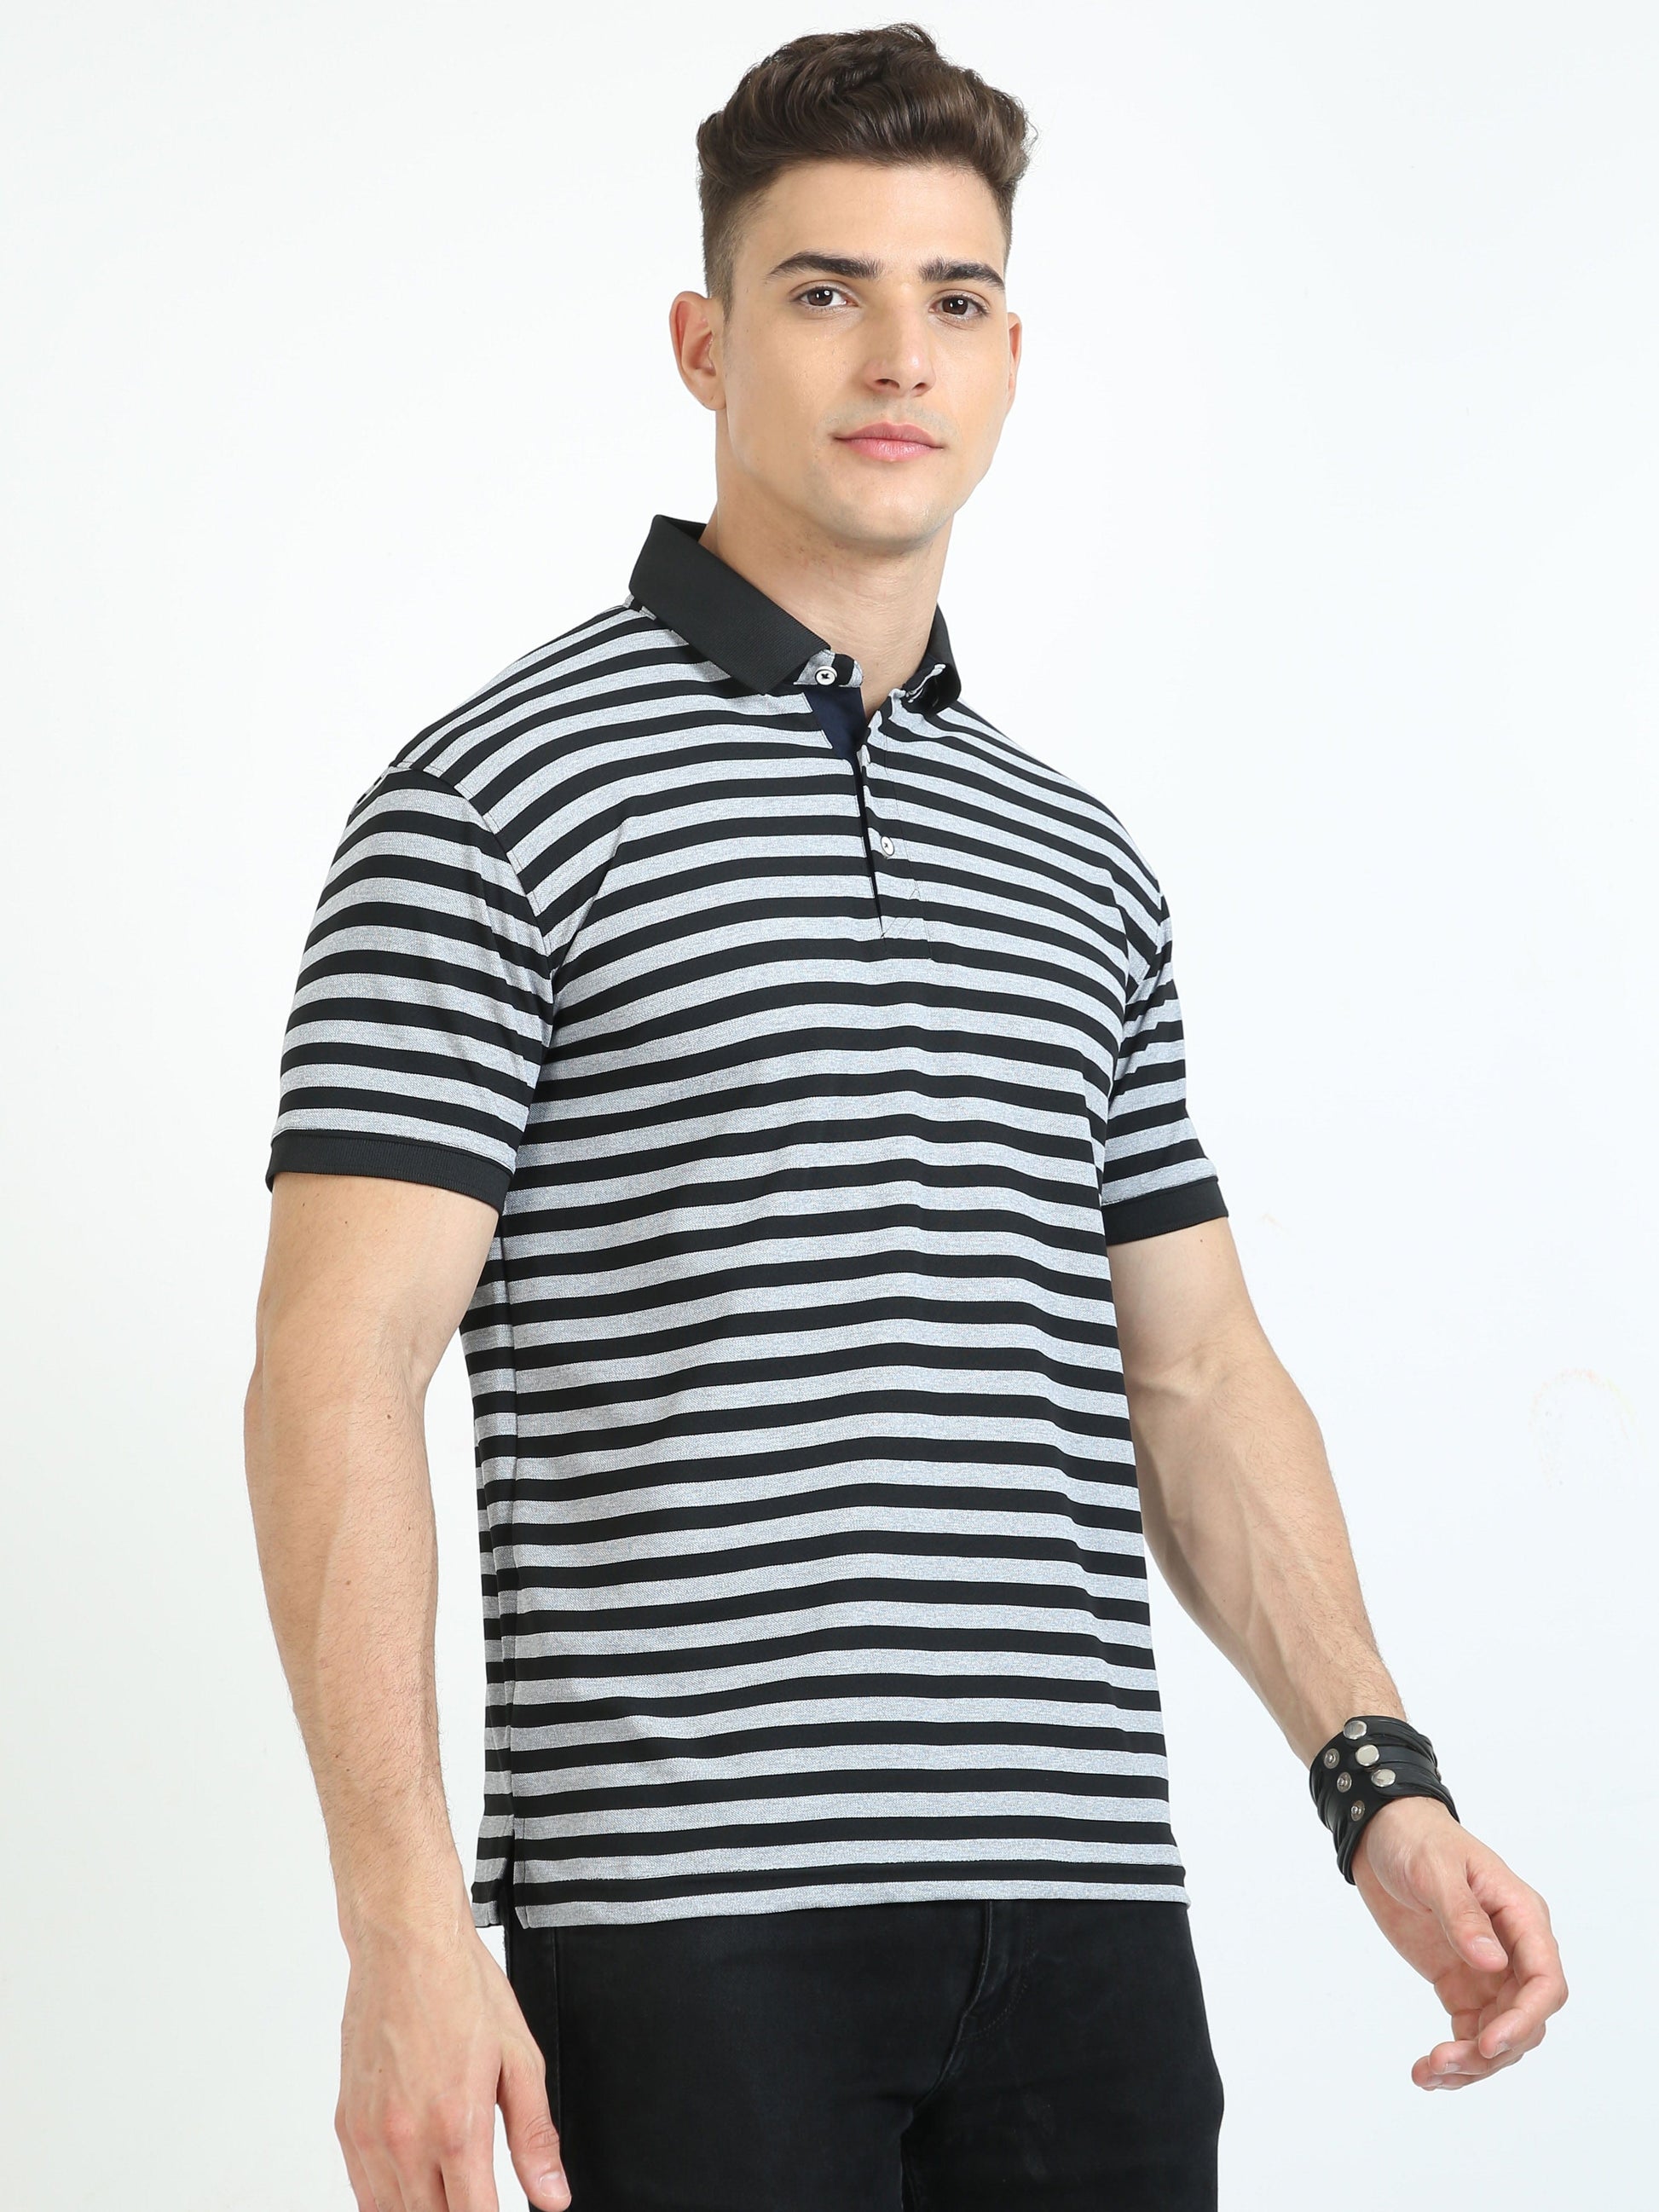 Black & Grey Stripe Men's Polo T-shirt